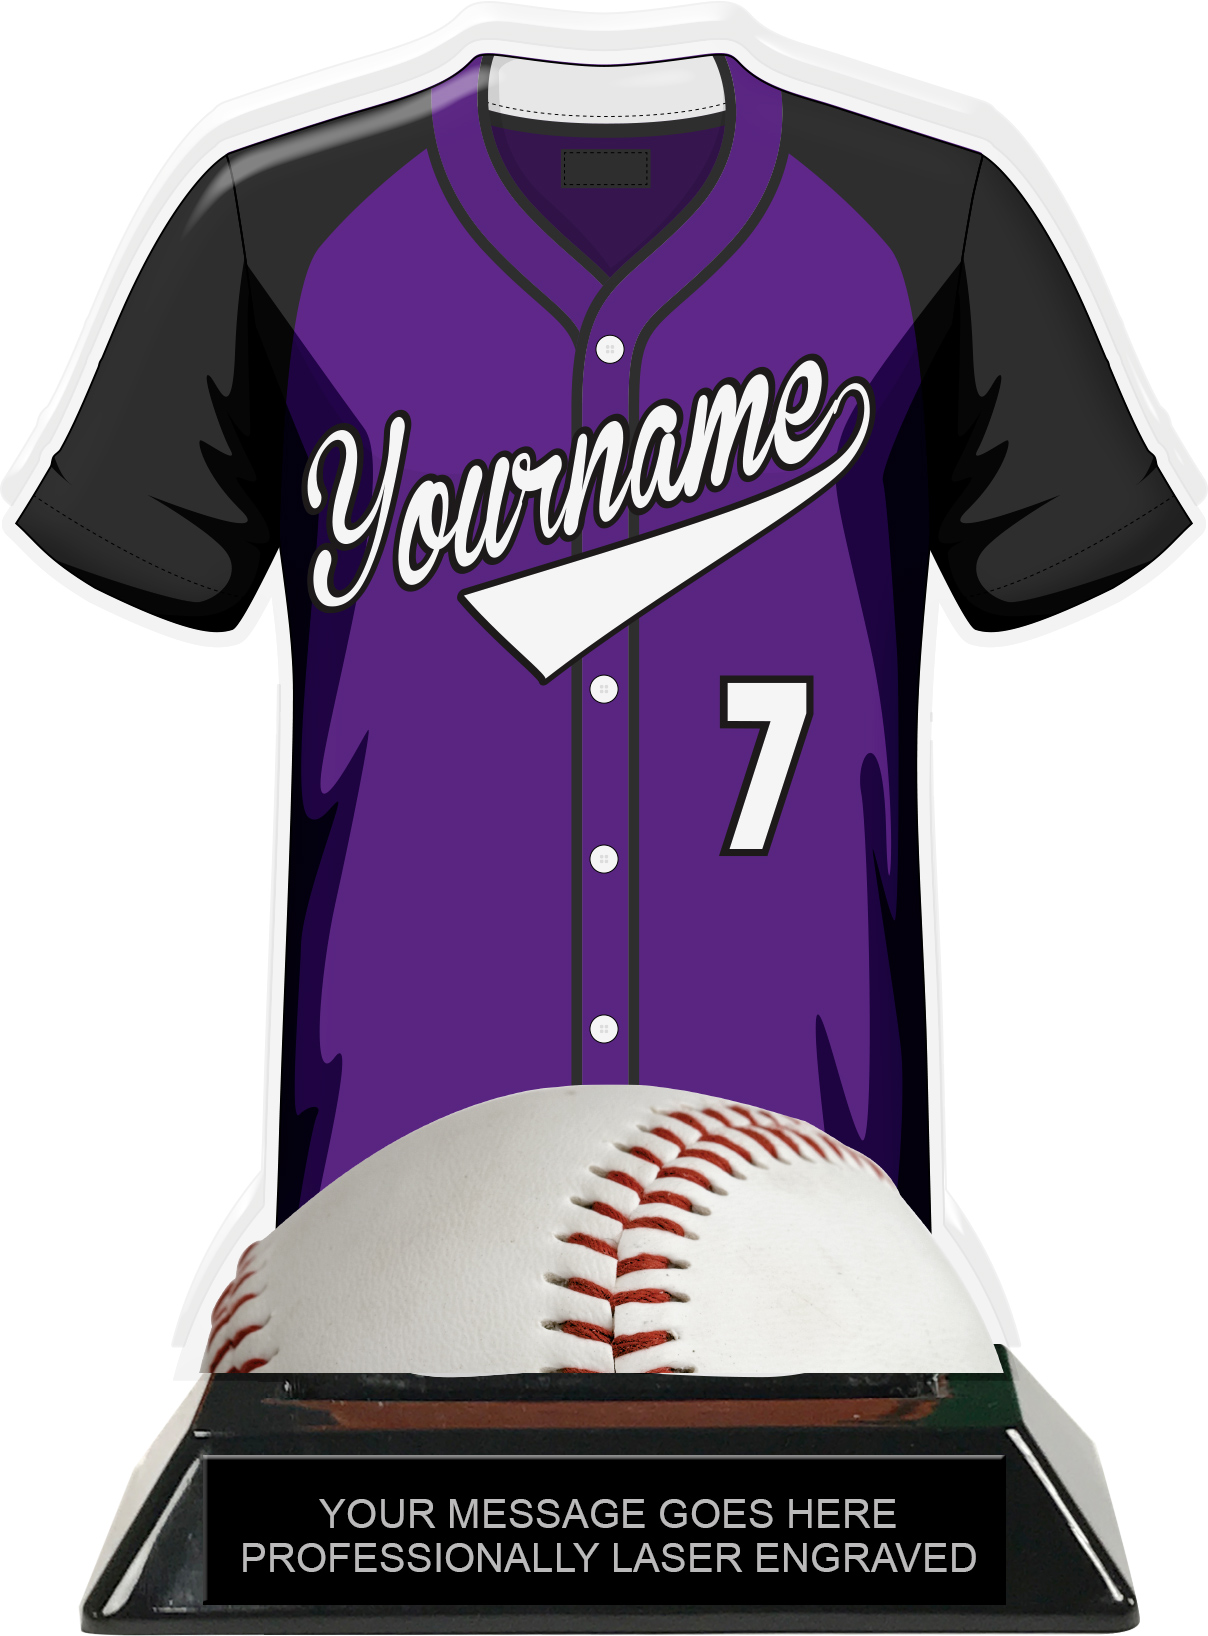 purple baseball jersey